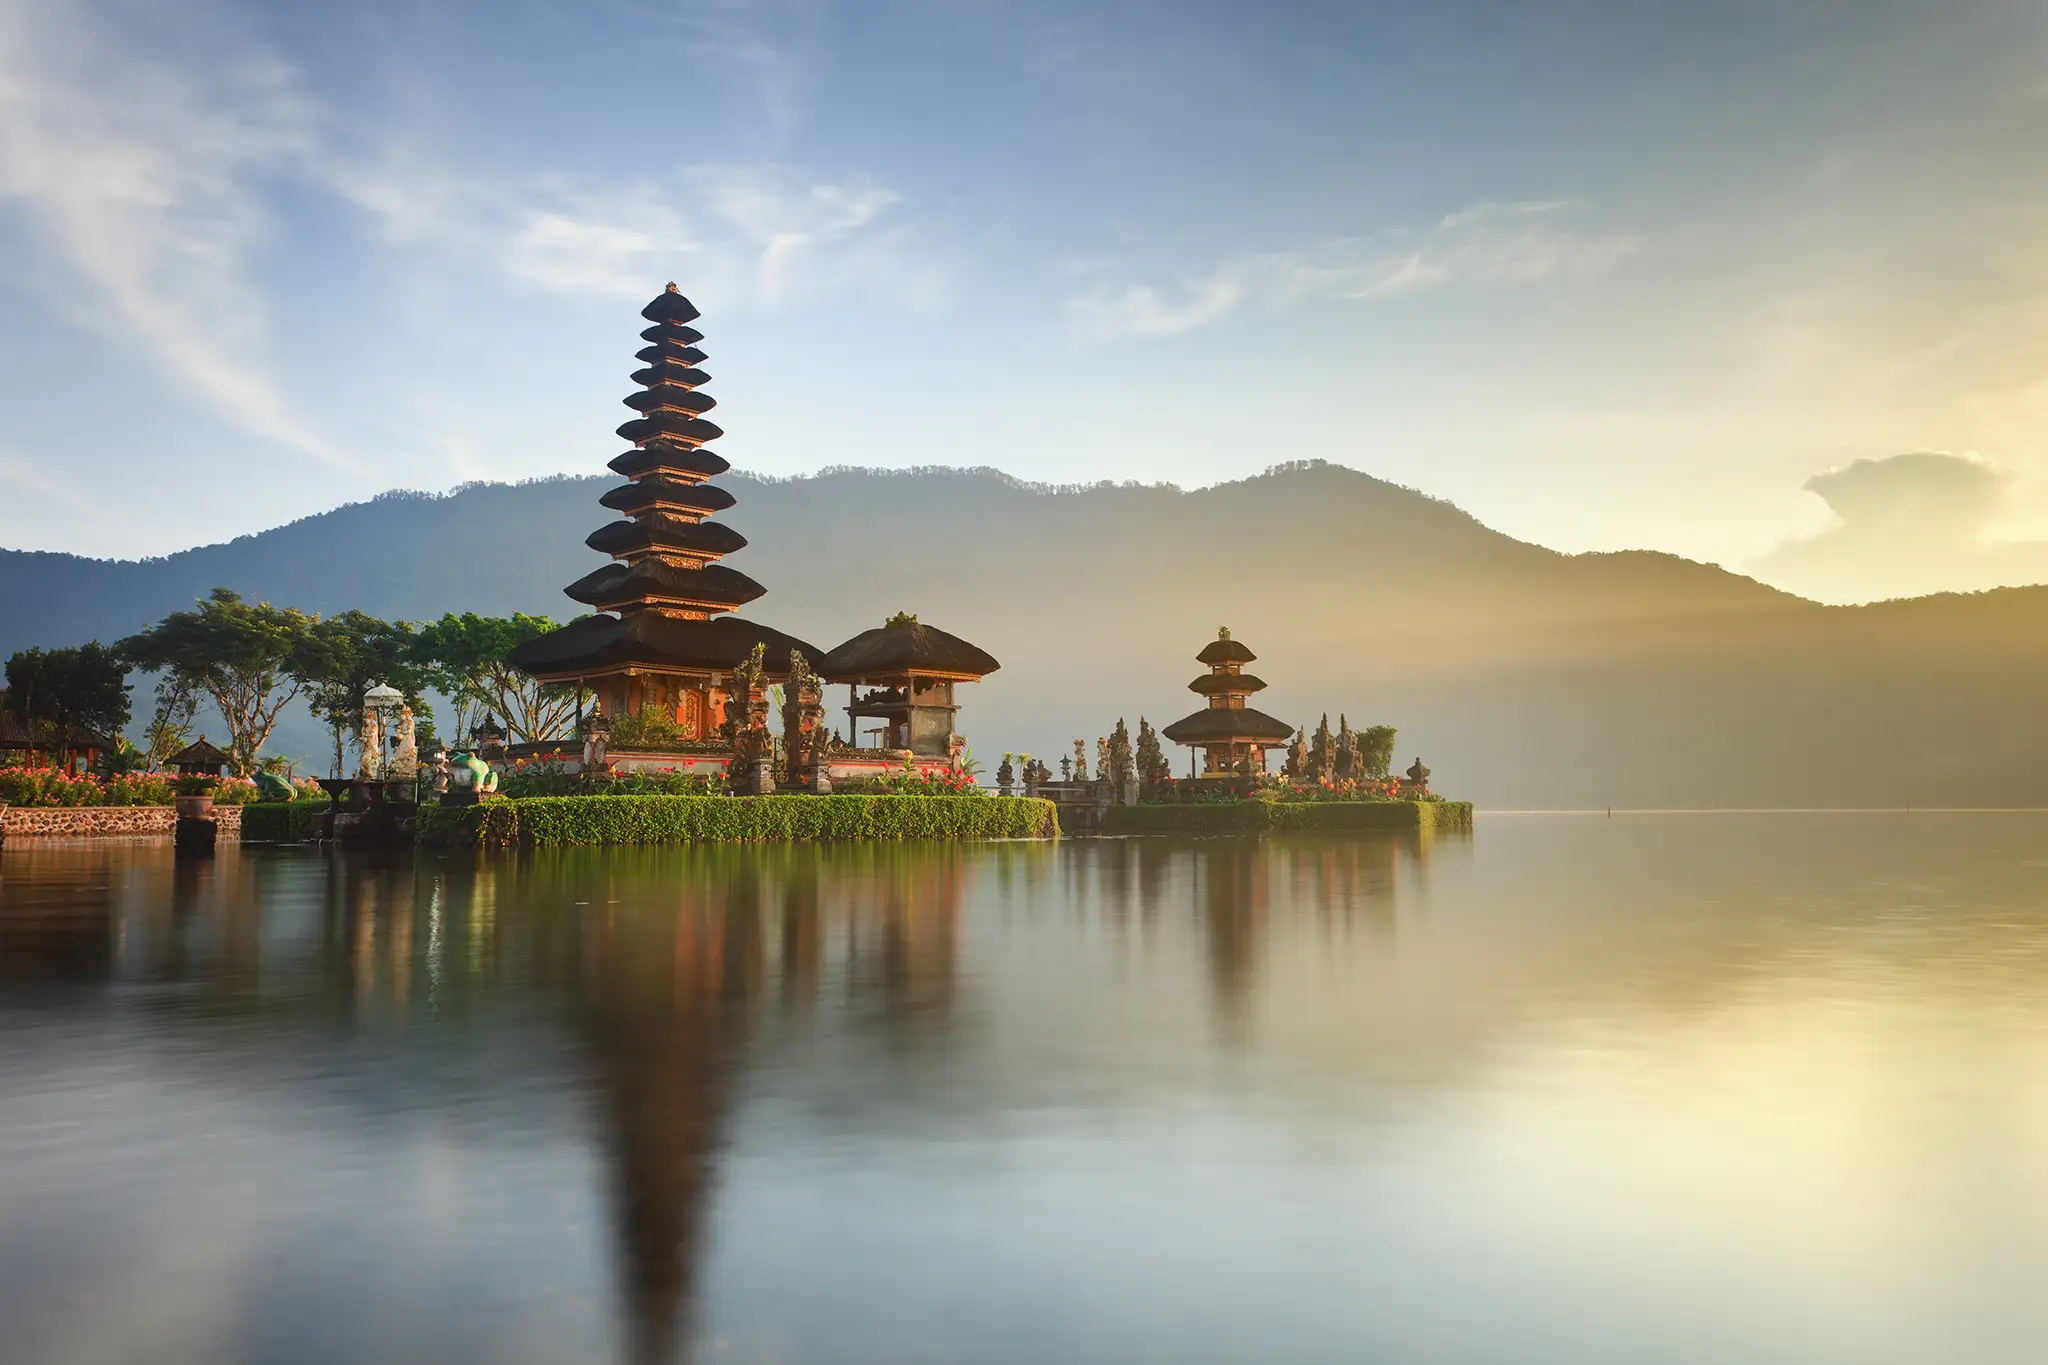 Ulun Danu temple on Bratan lake, Bali, Indonesia.